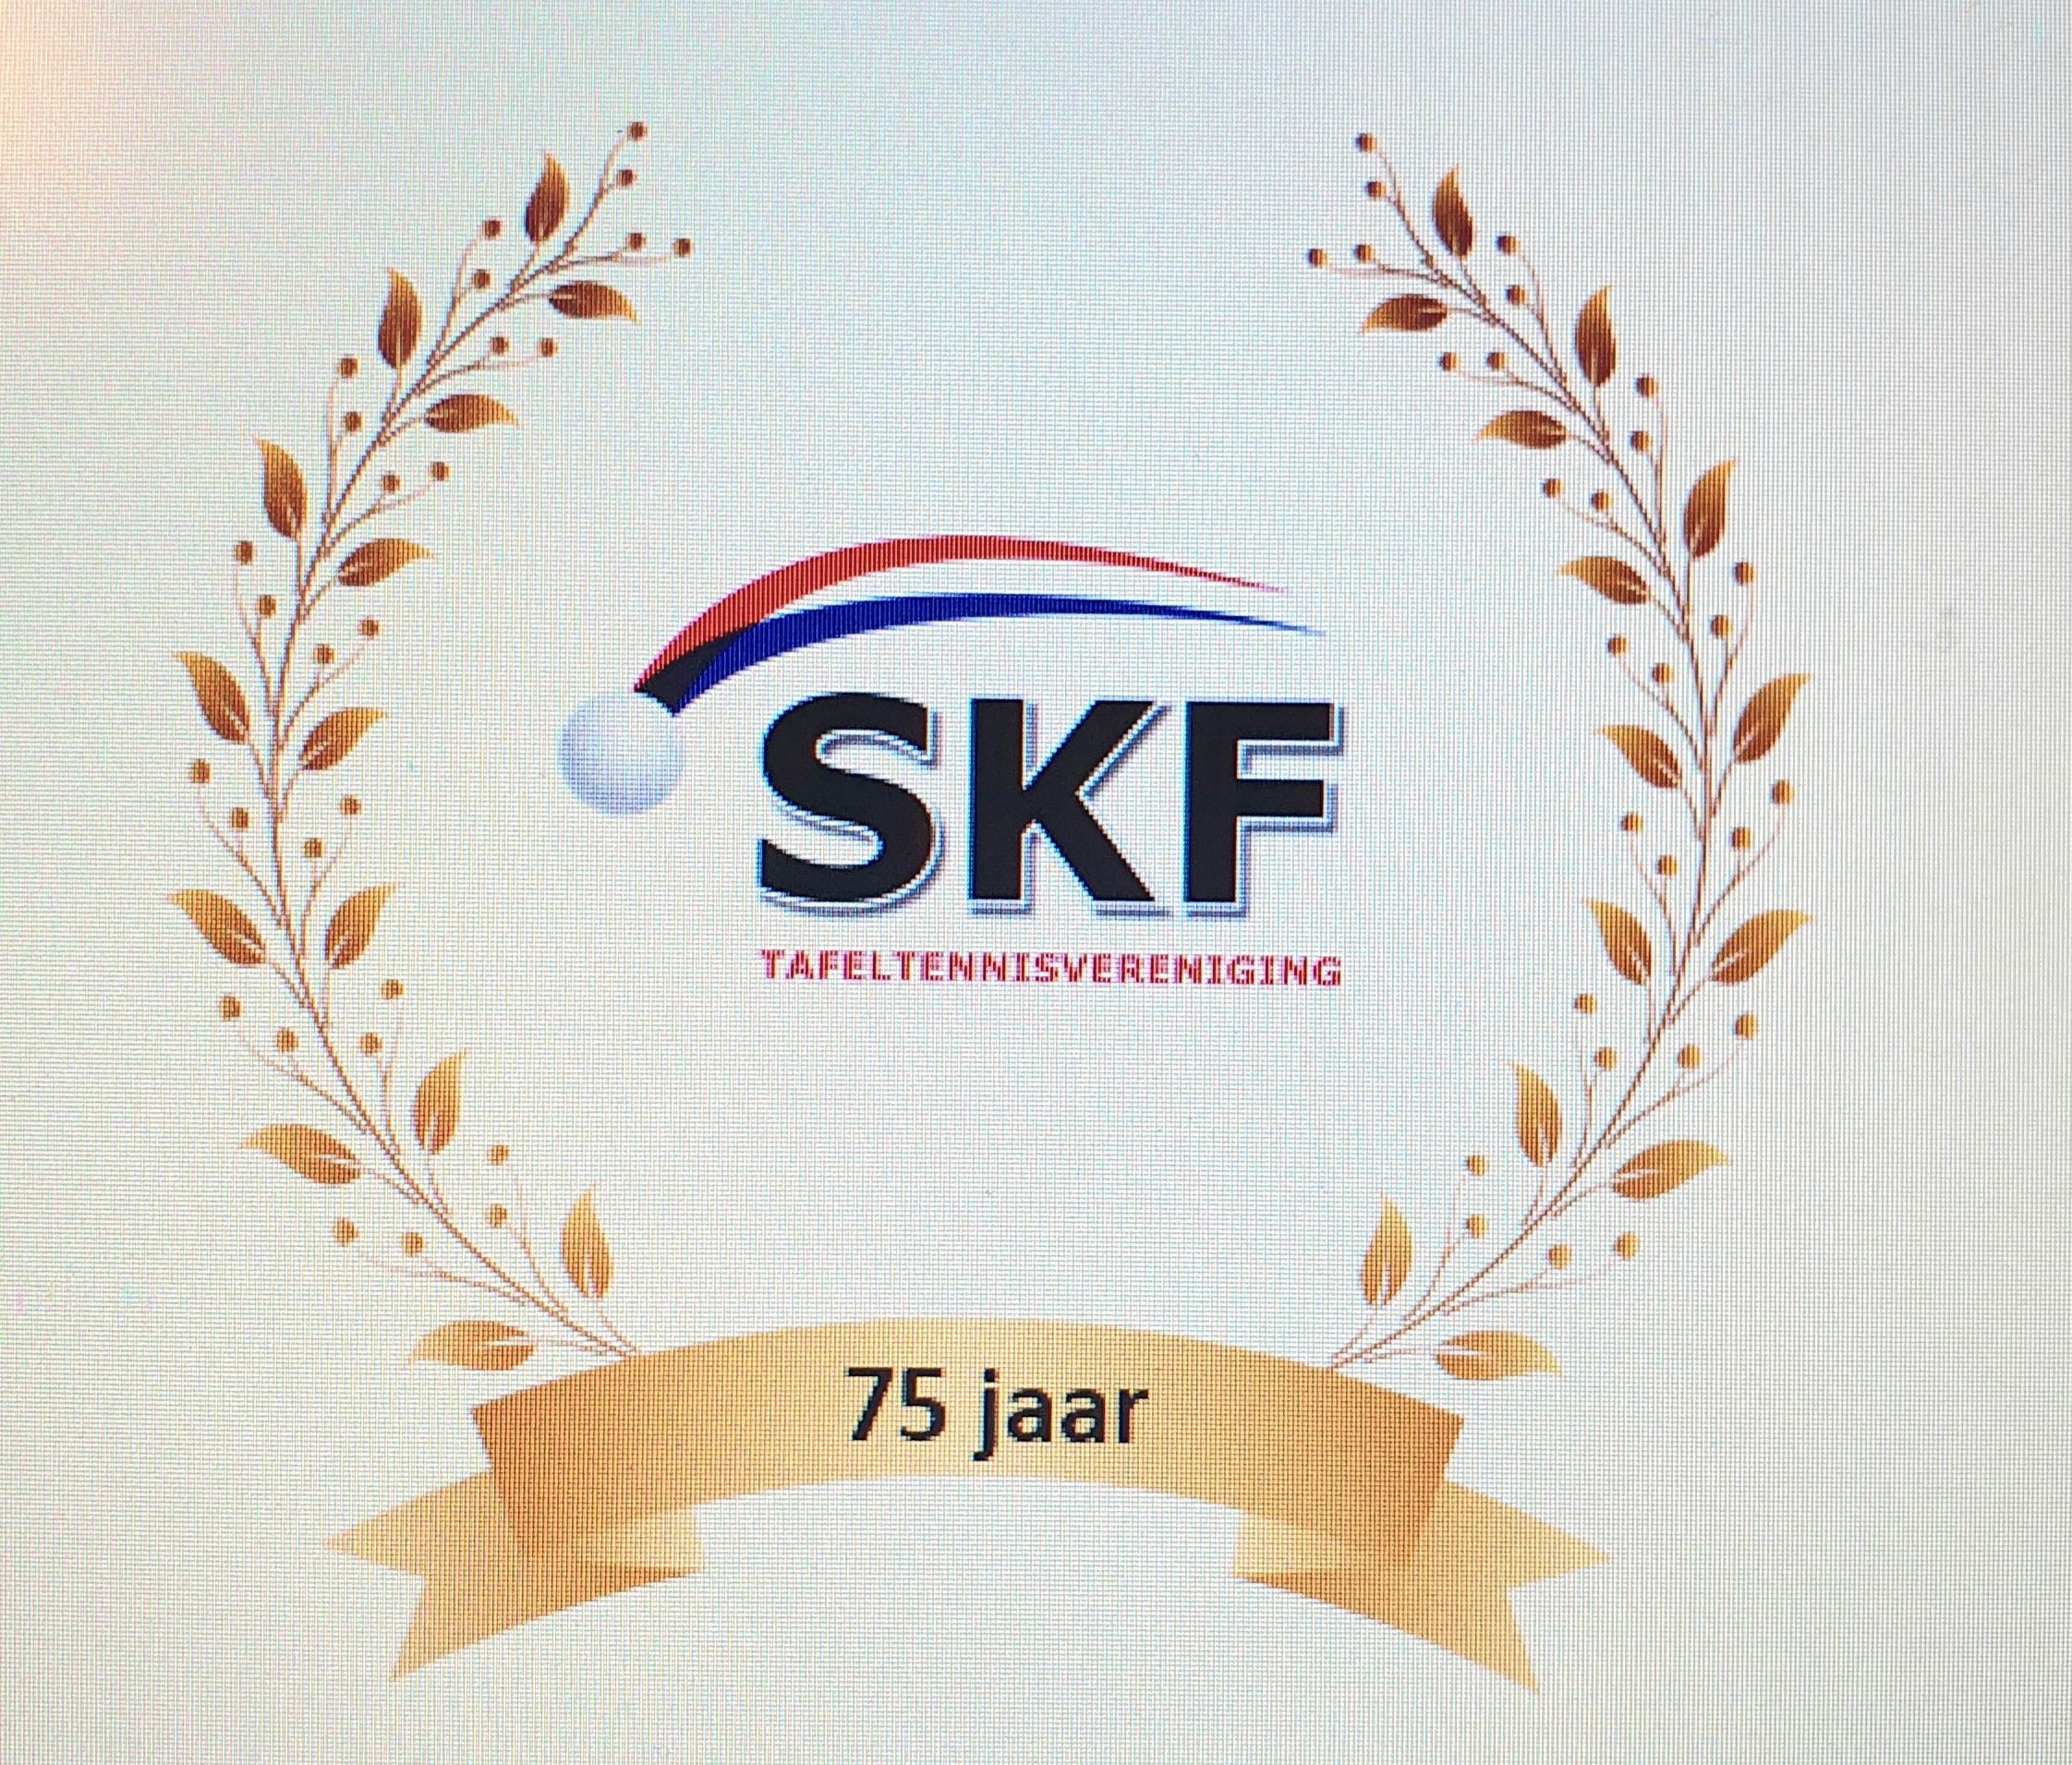 Tafeltennisvereniging SKF